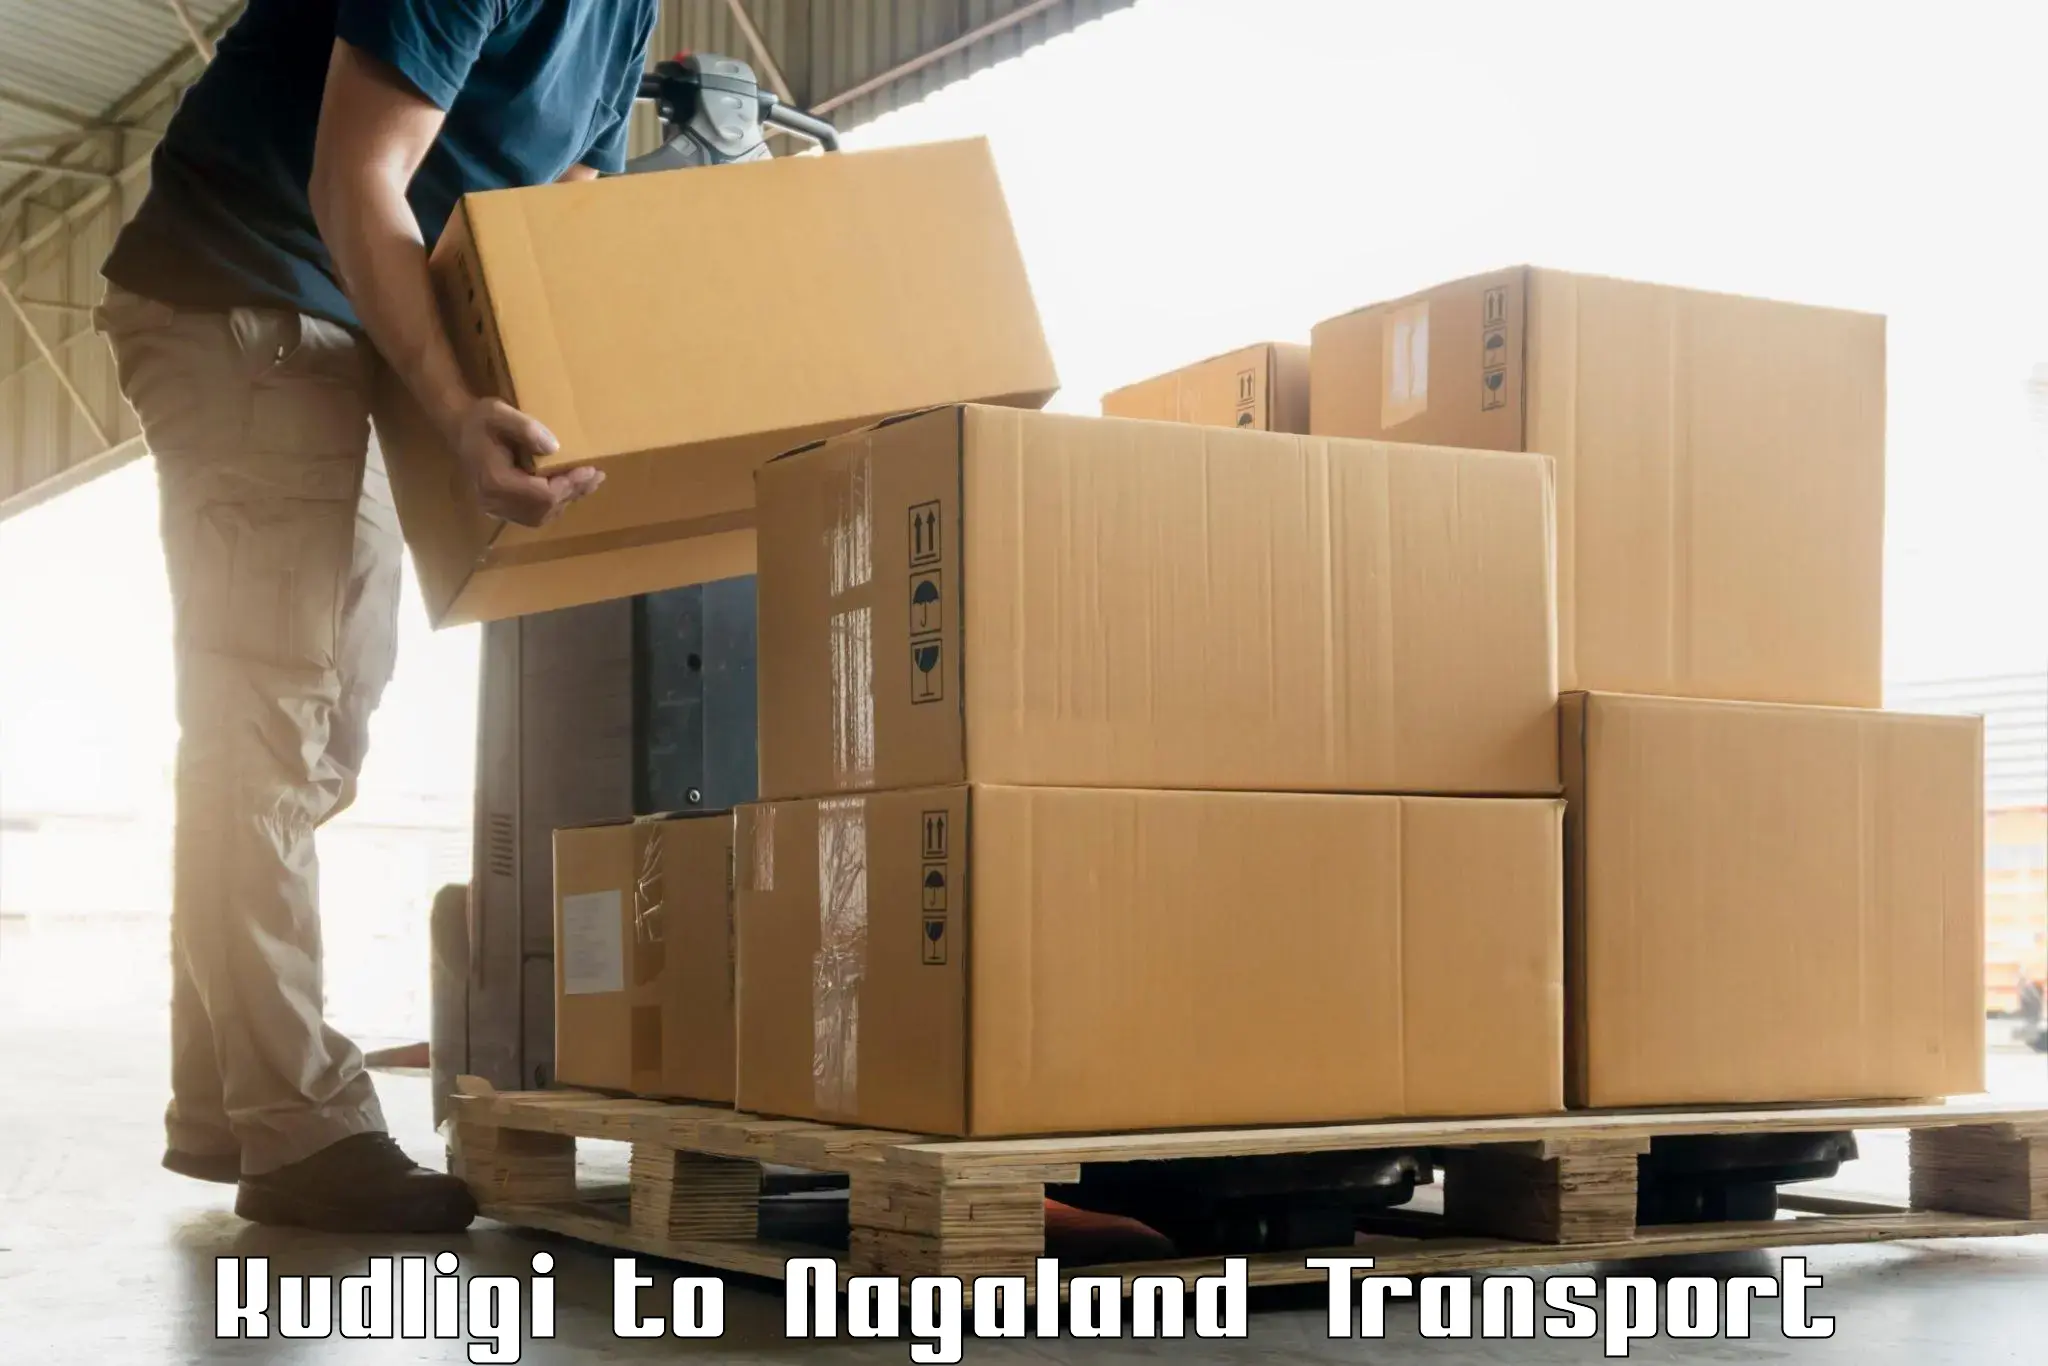 Shipping partner in Kudligi to Nagaland